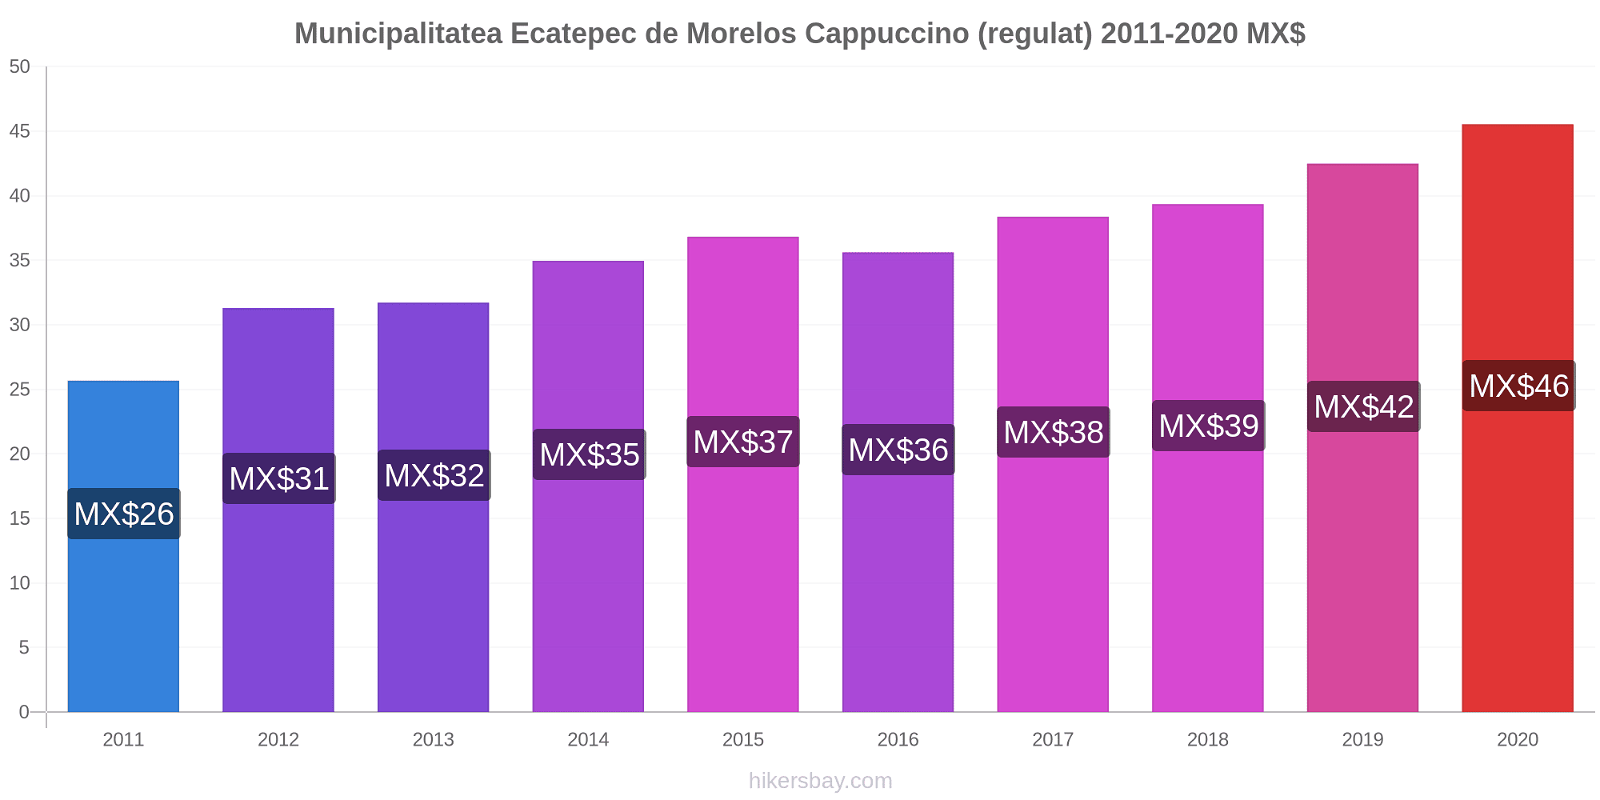 Municipalitatea Ecatepec de Morelos modificări de preț Cappuccino (regulat) hikersbay.com